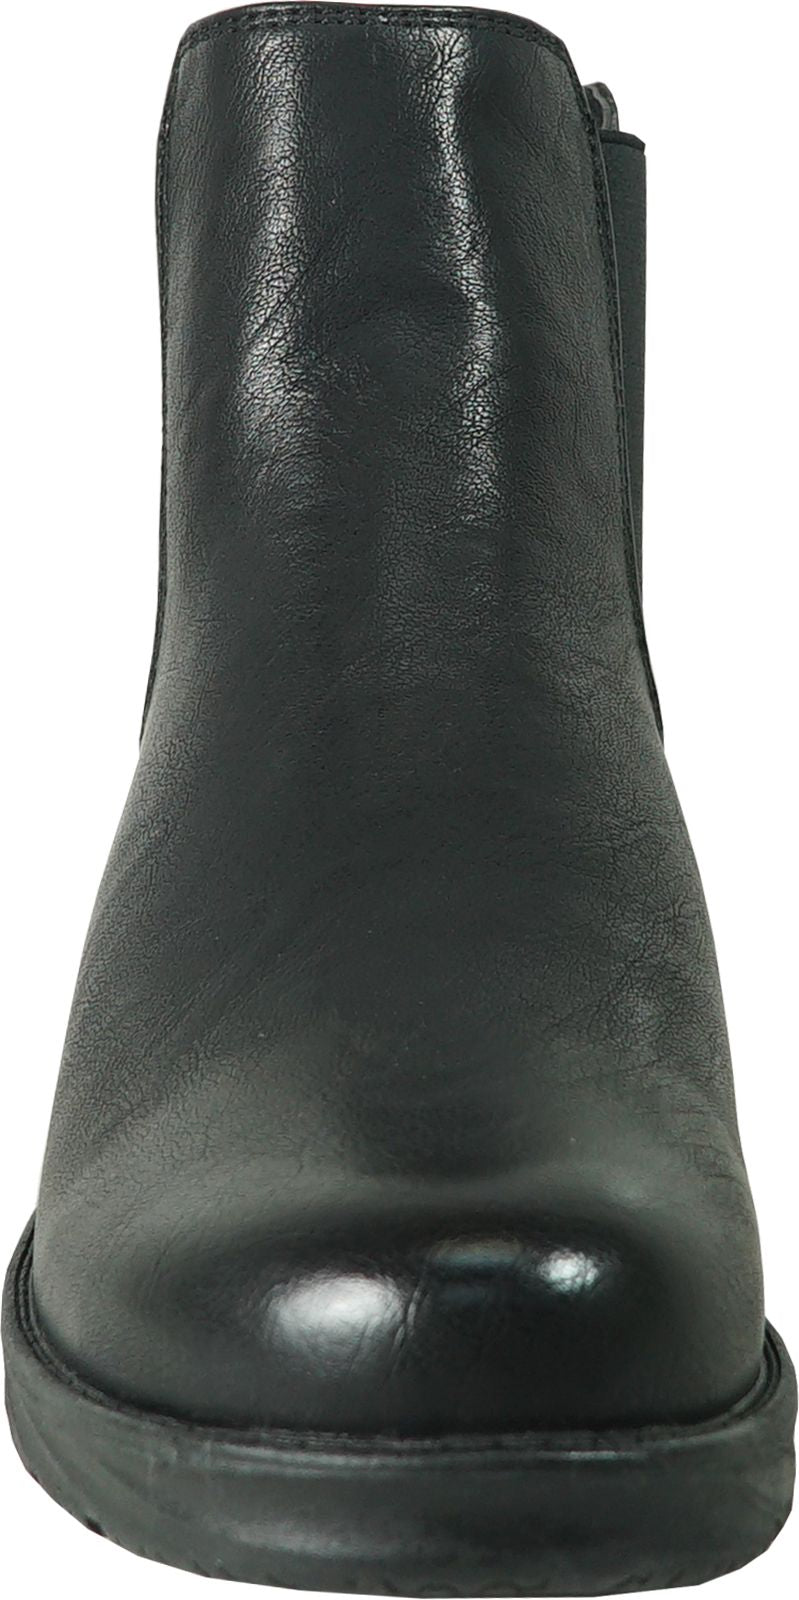 Vangelo Boots Hf2603 Black